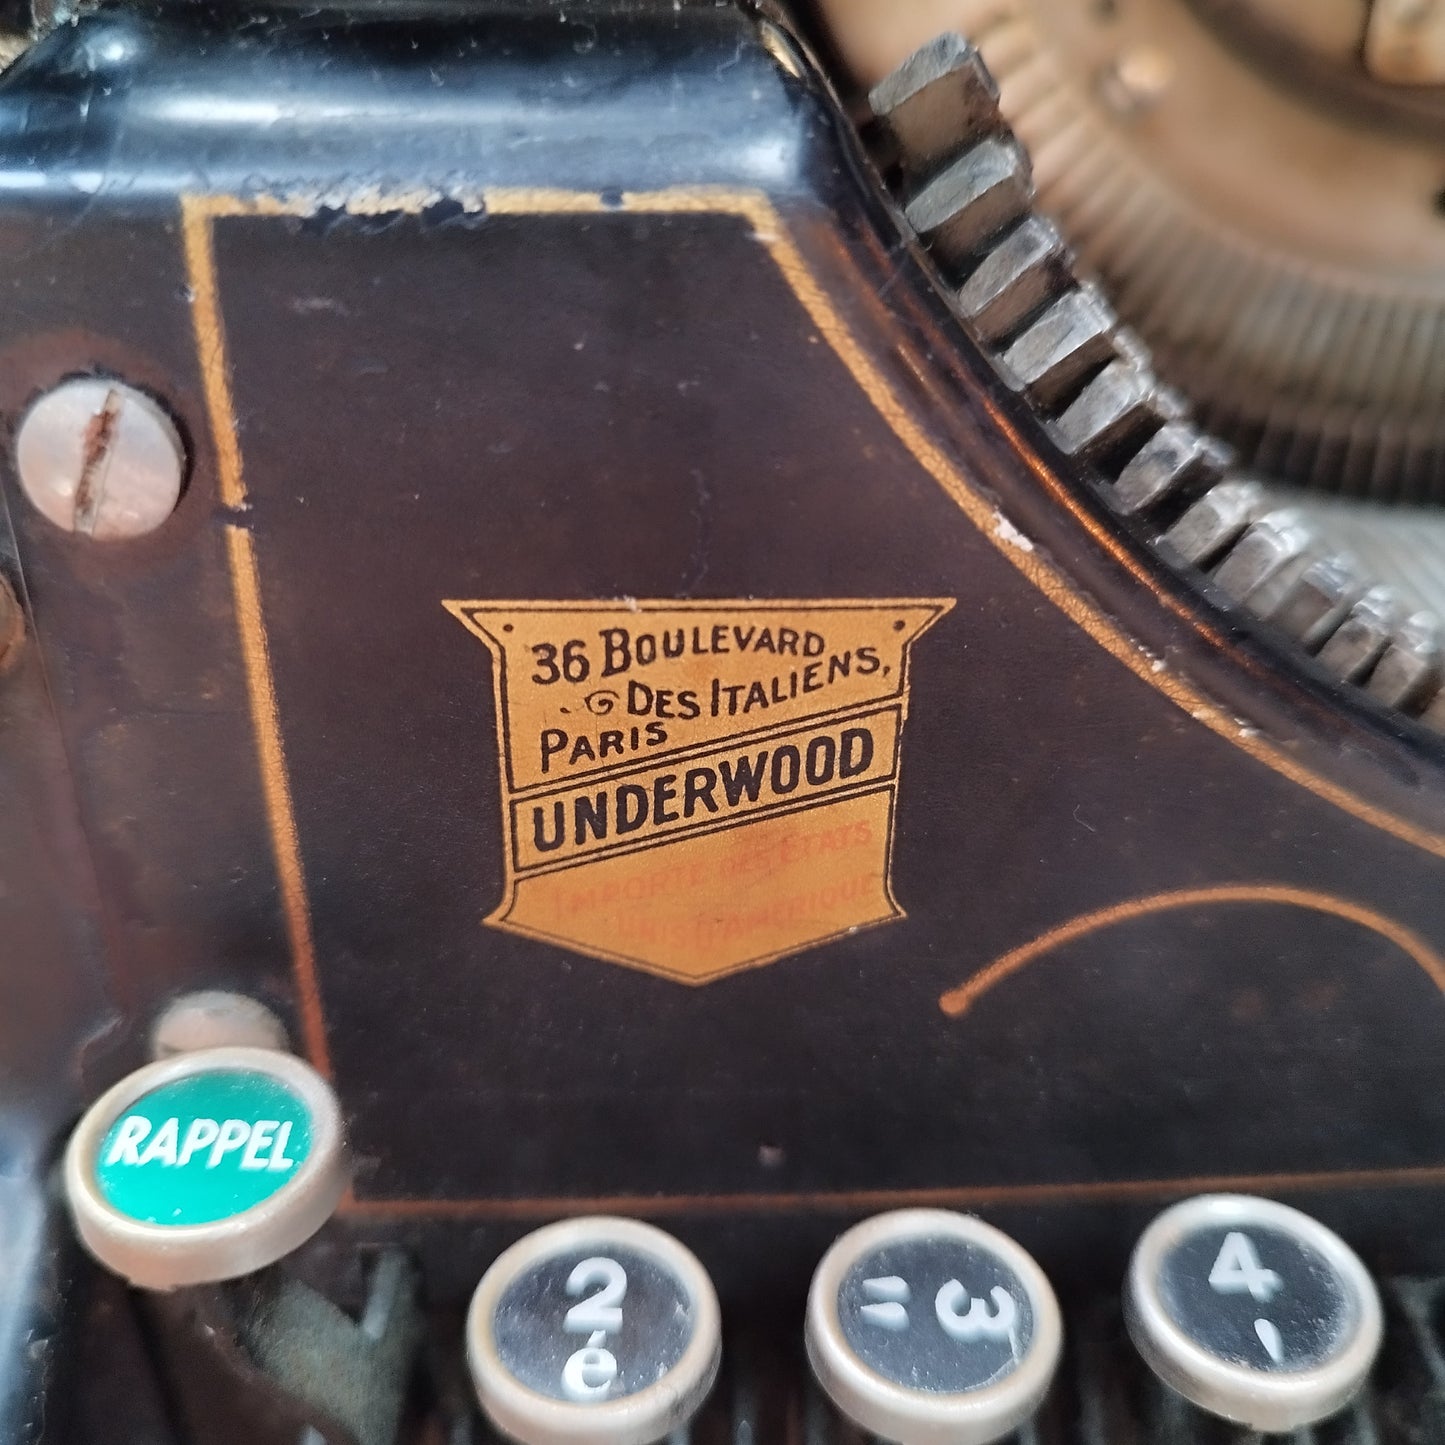 Machine à écrire Underwood N°5